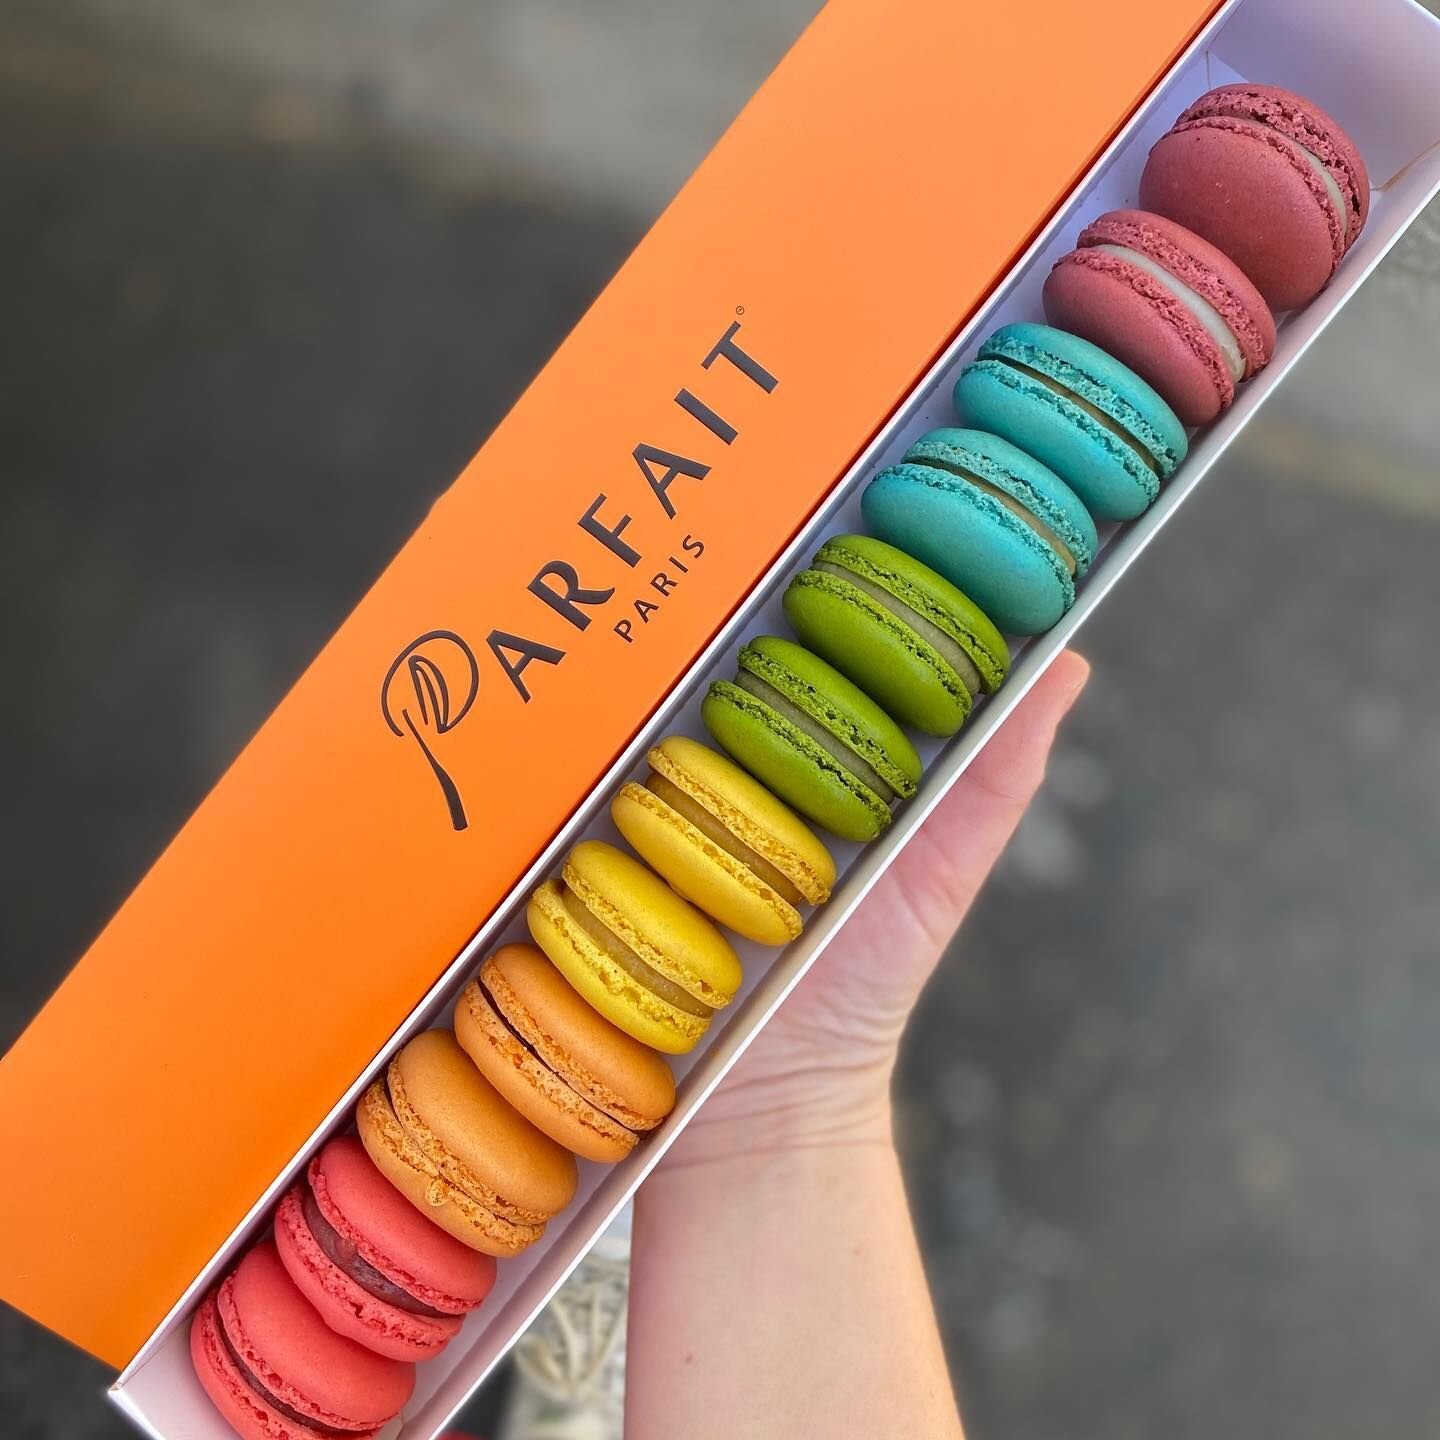 Parfait Paris (@leparfaitparis) • Instagram photos and videos